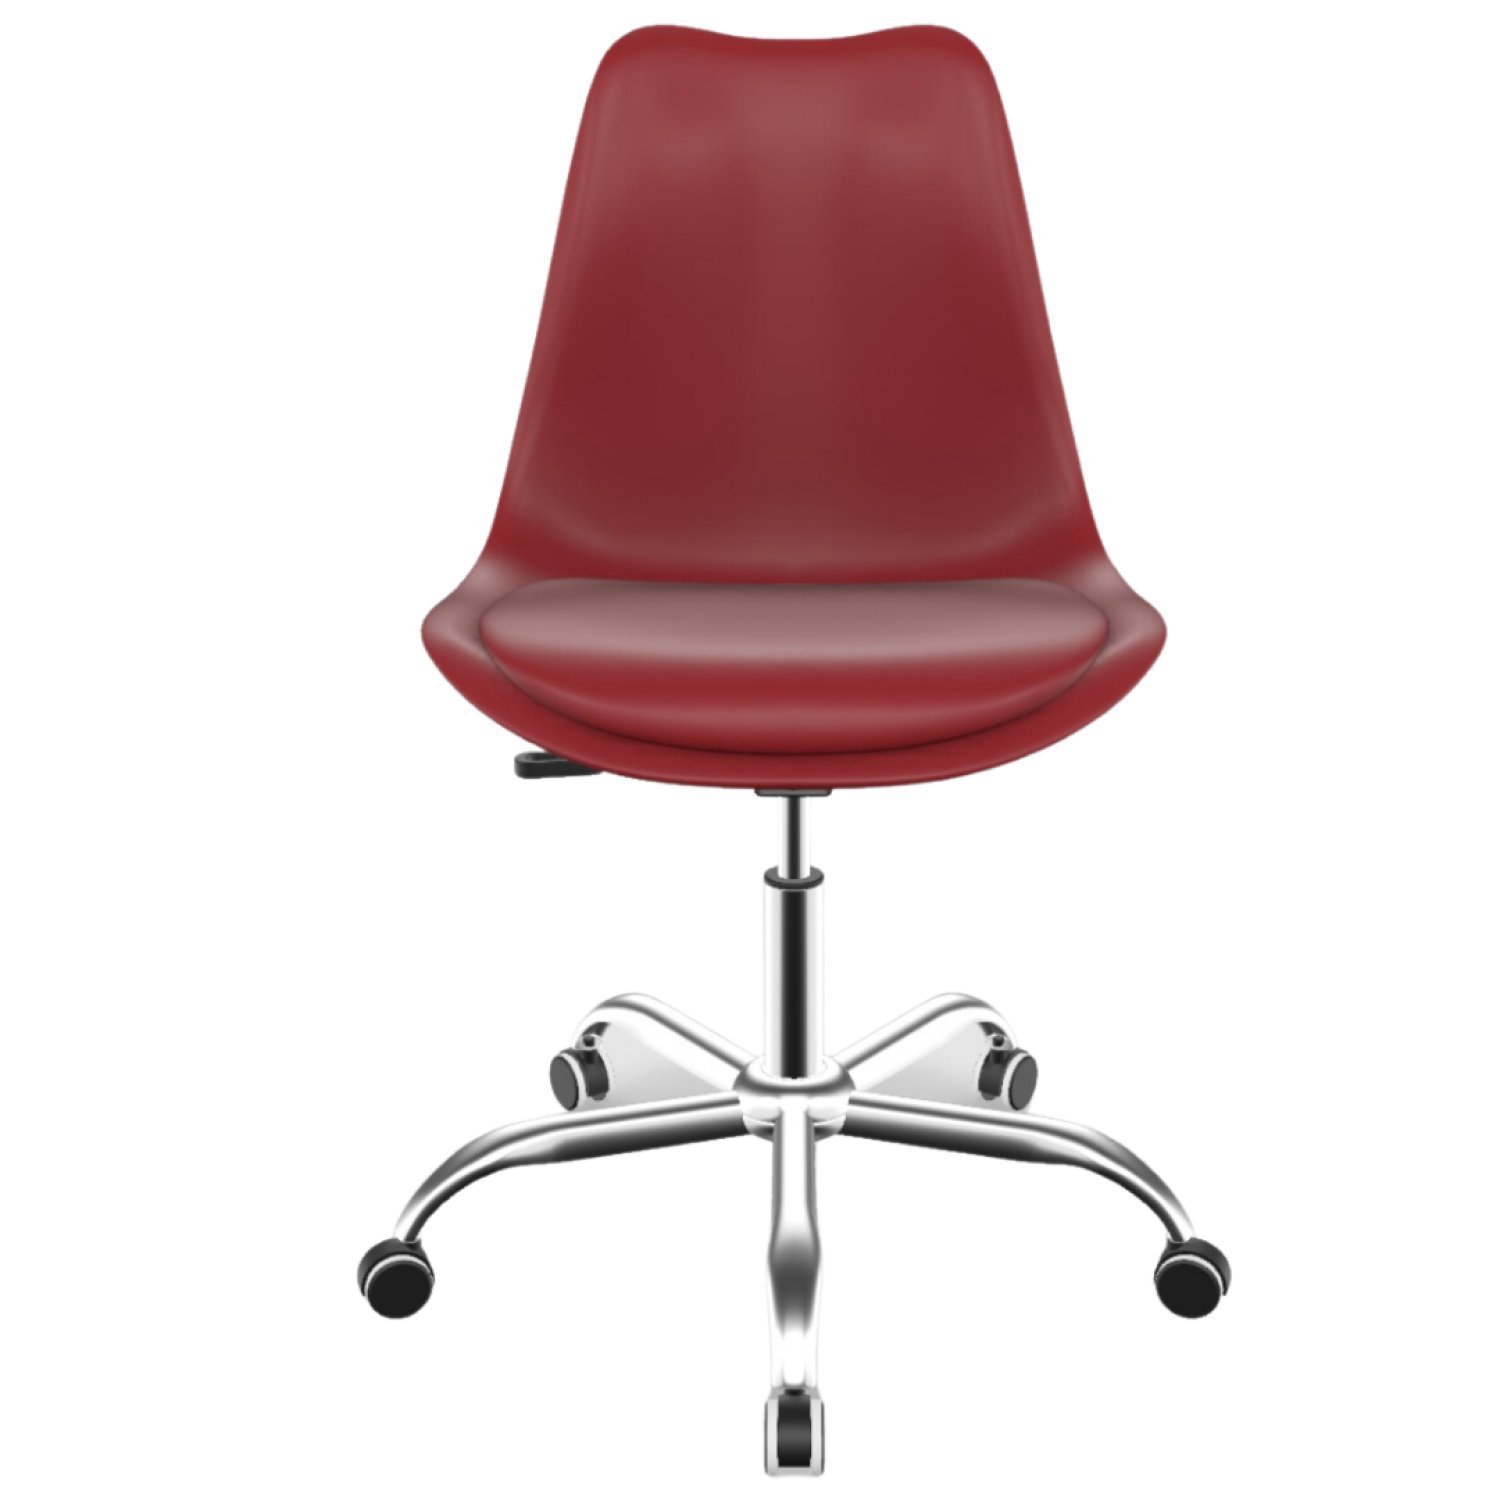 Cadeira para Escritório Eames Estofada Saarinen PP Base Aço Cromado - 5